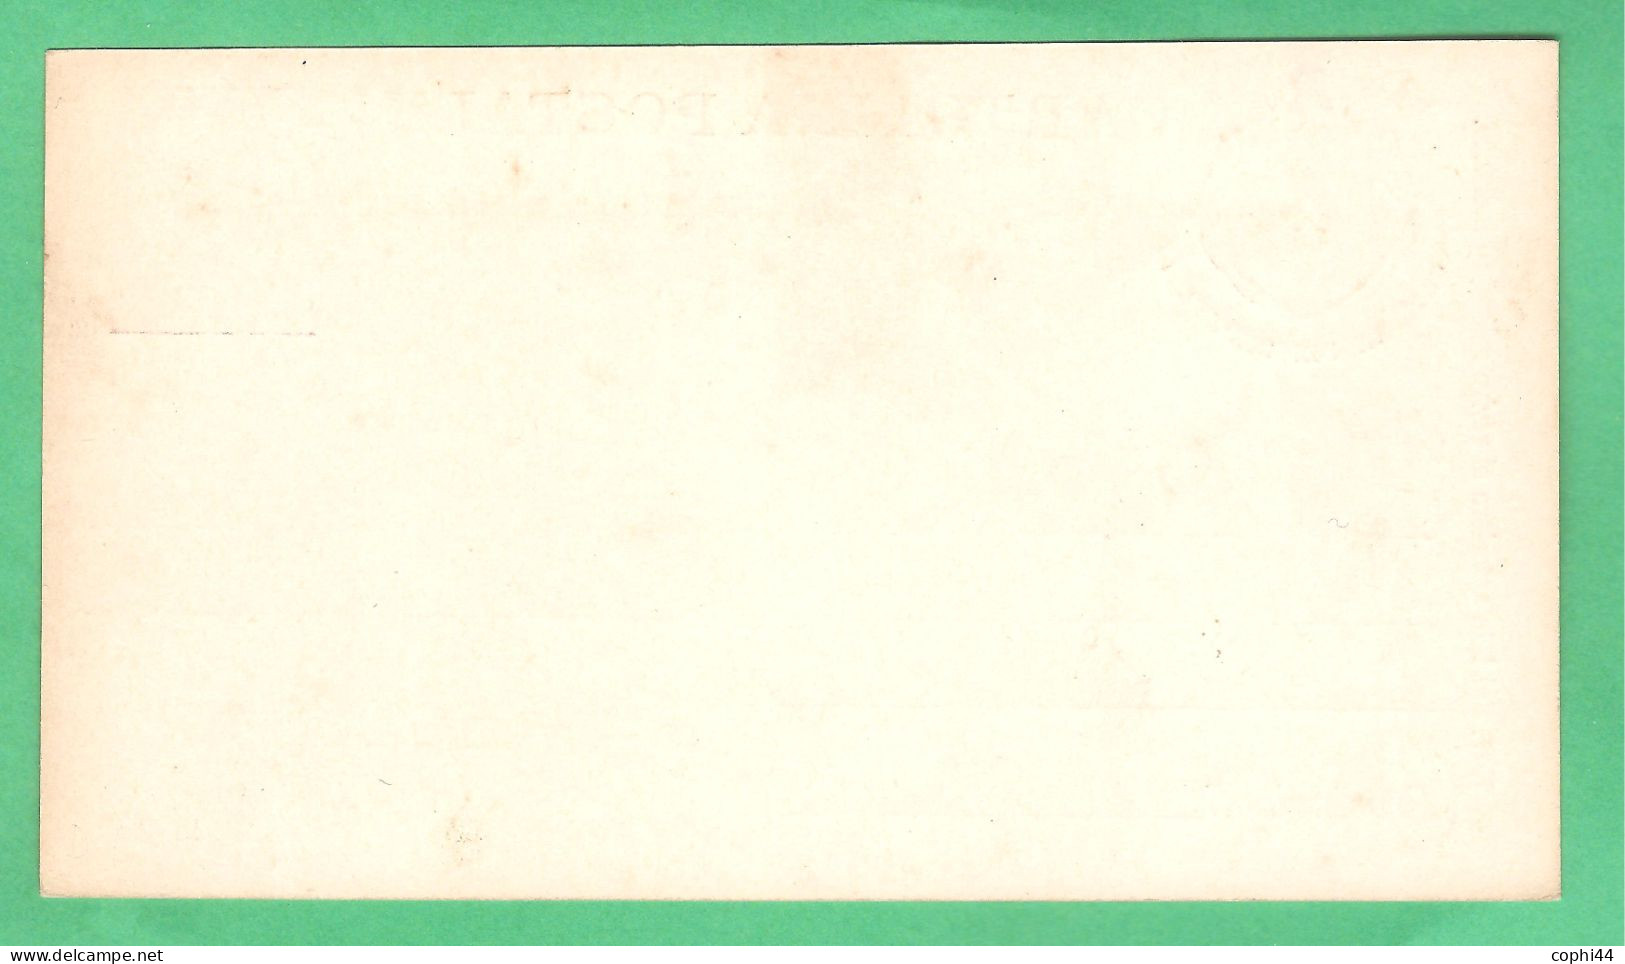 REGNO D'ITALIA 1891 CARTOLINA POSTALE PER DEPUTATI UMBERTO I MIL. 91 STEMMA CON BANDIERE (FILAGRANO S4) NUOVA - Stamped Stationery